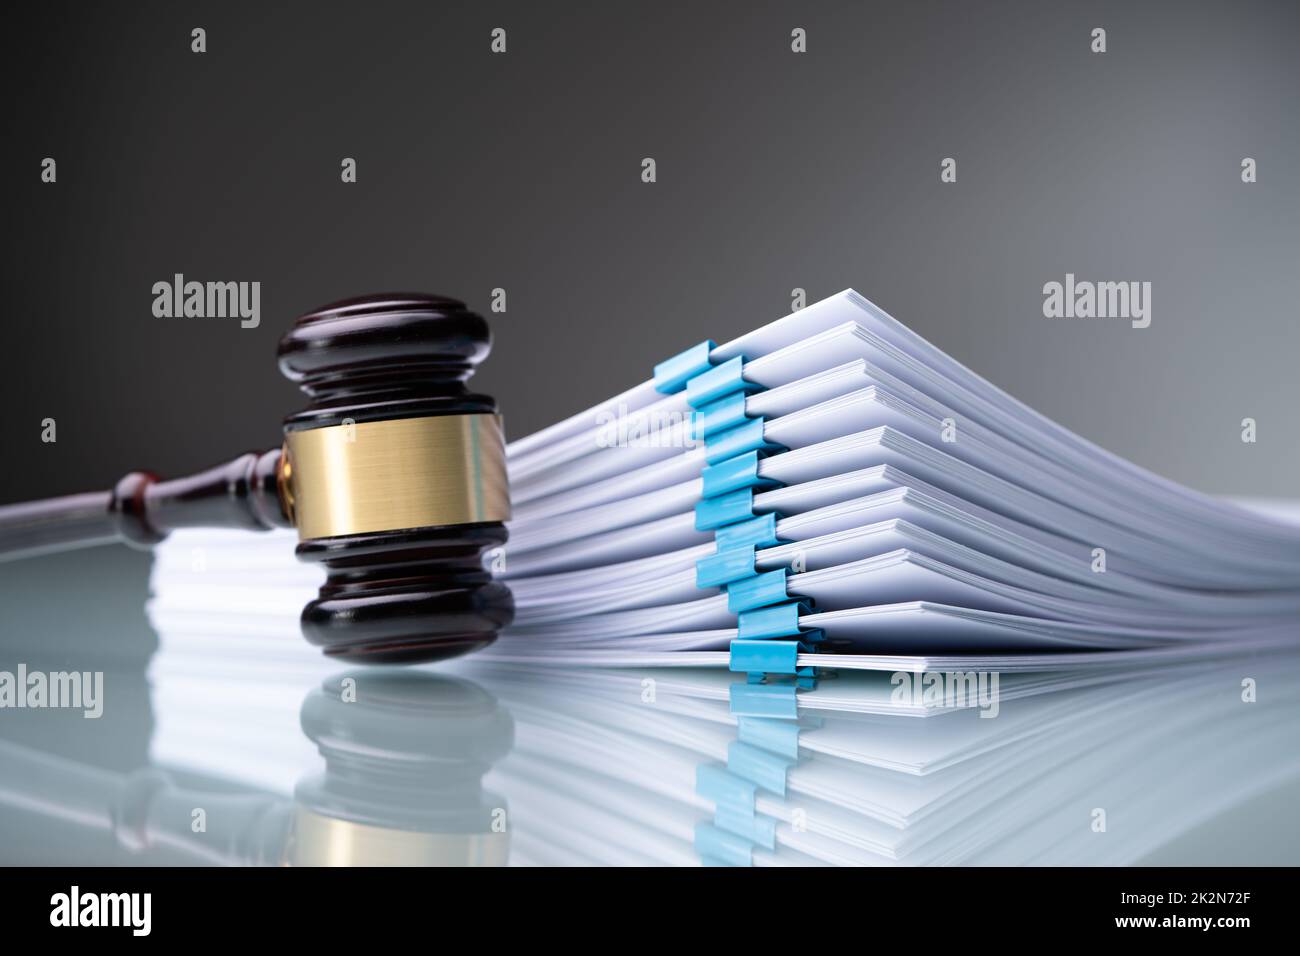 Piles Judicial Court Files Stock Photo